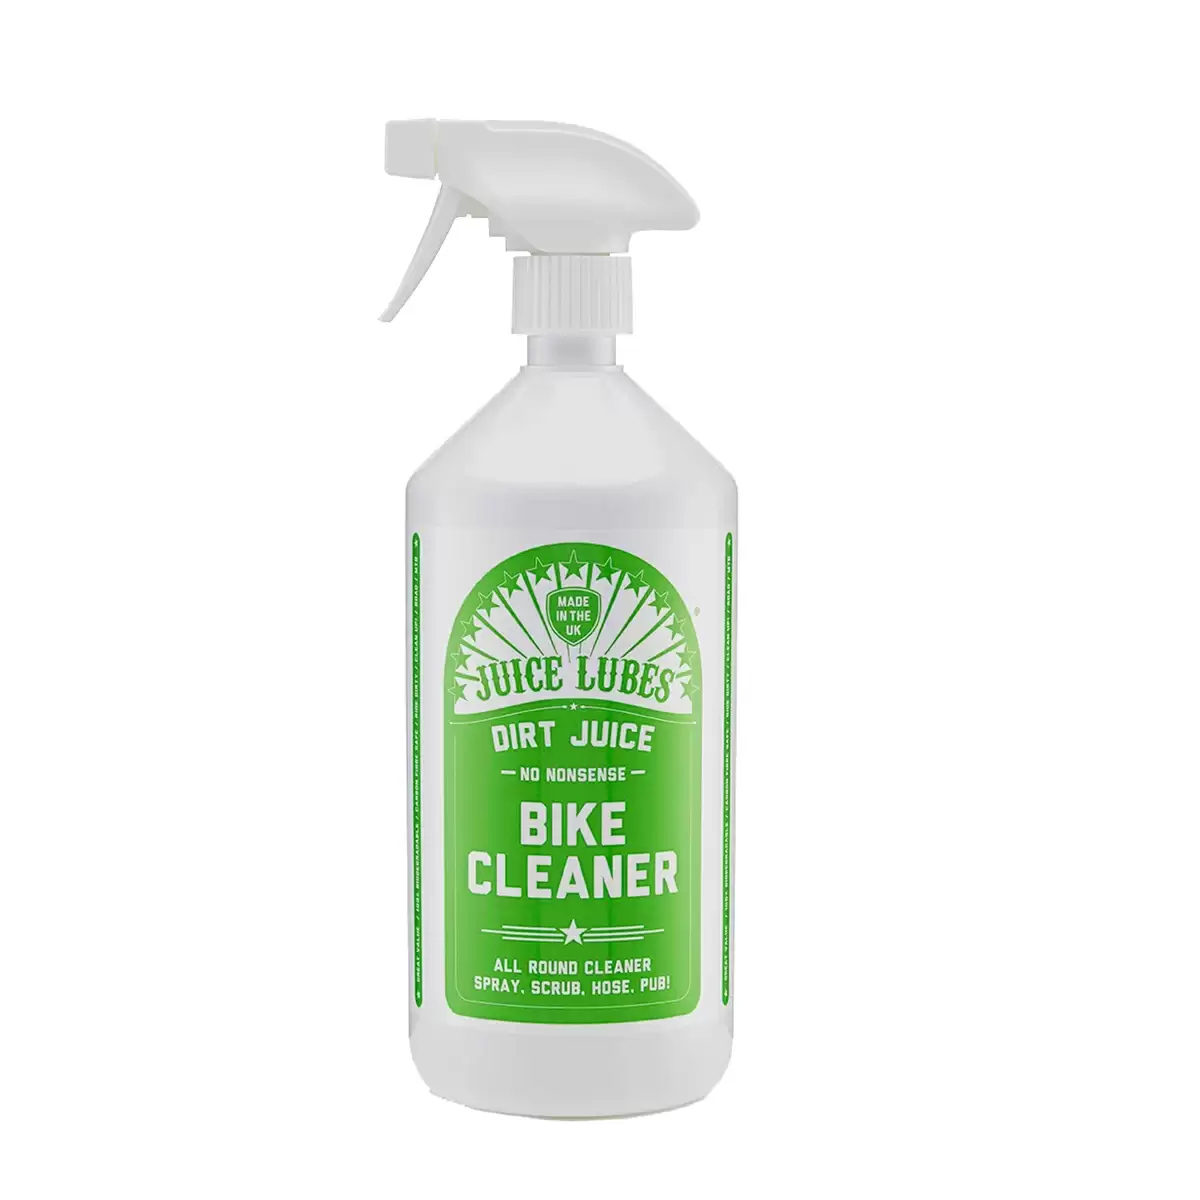 Detergent bike cleaner 1lt - image